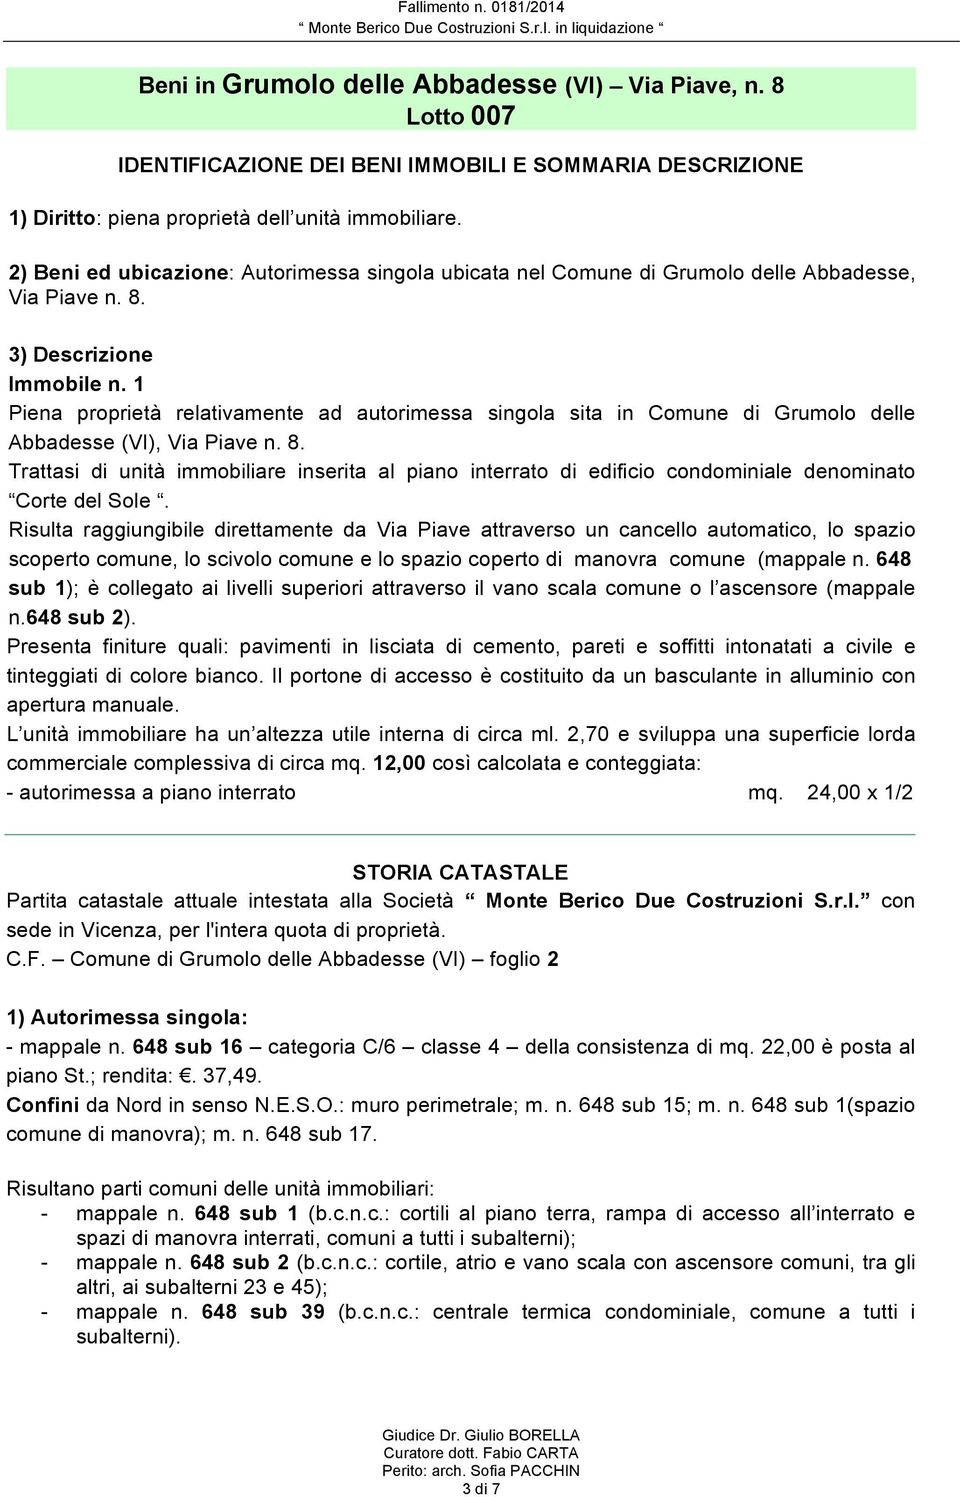 1 Piena proprietà relativamente ad autorimessa singola sita in Comune di Grumolo delle Abbadesse (VI), Via Piave n. 8.